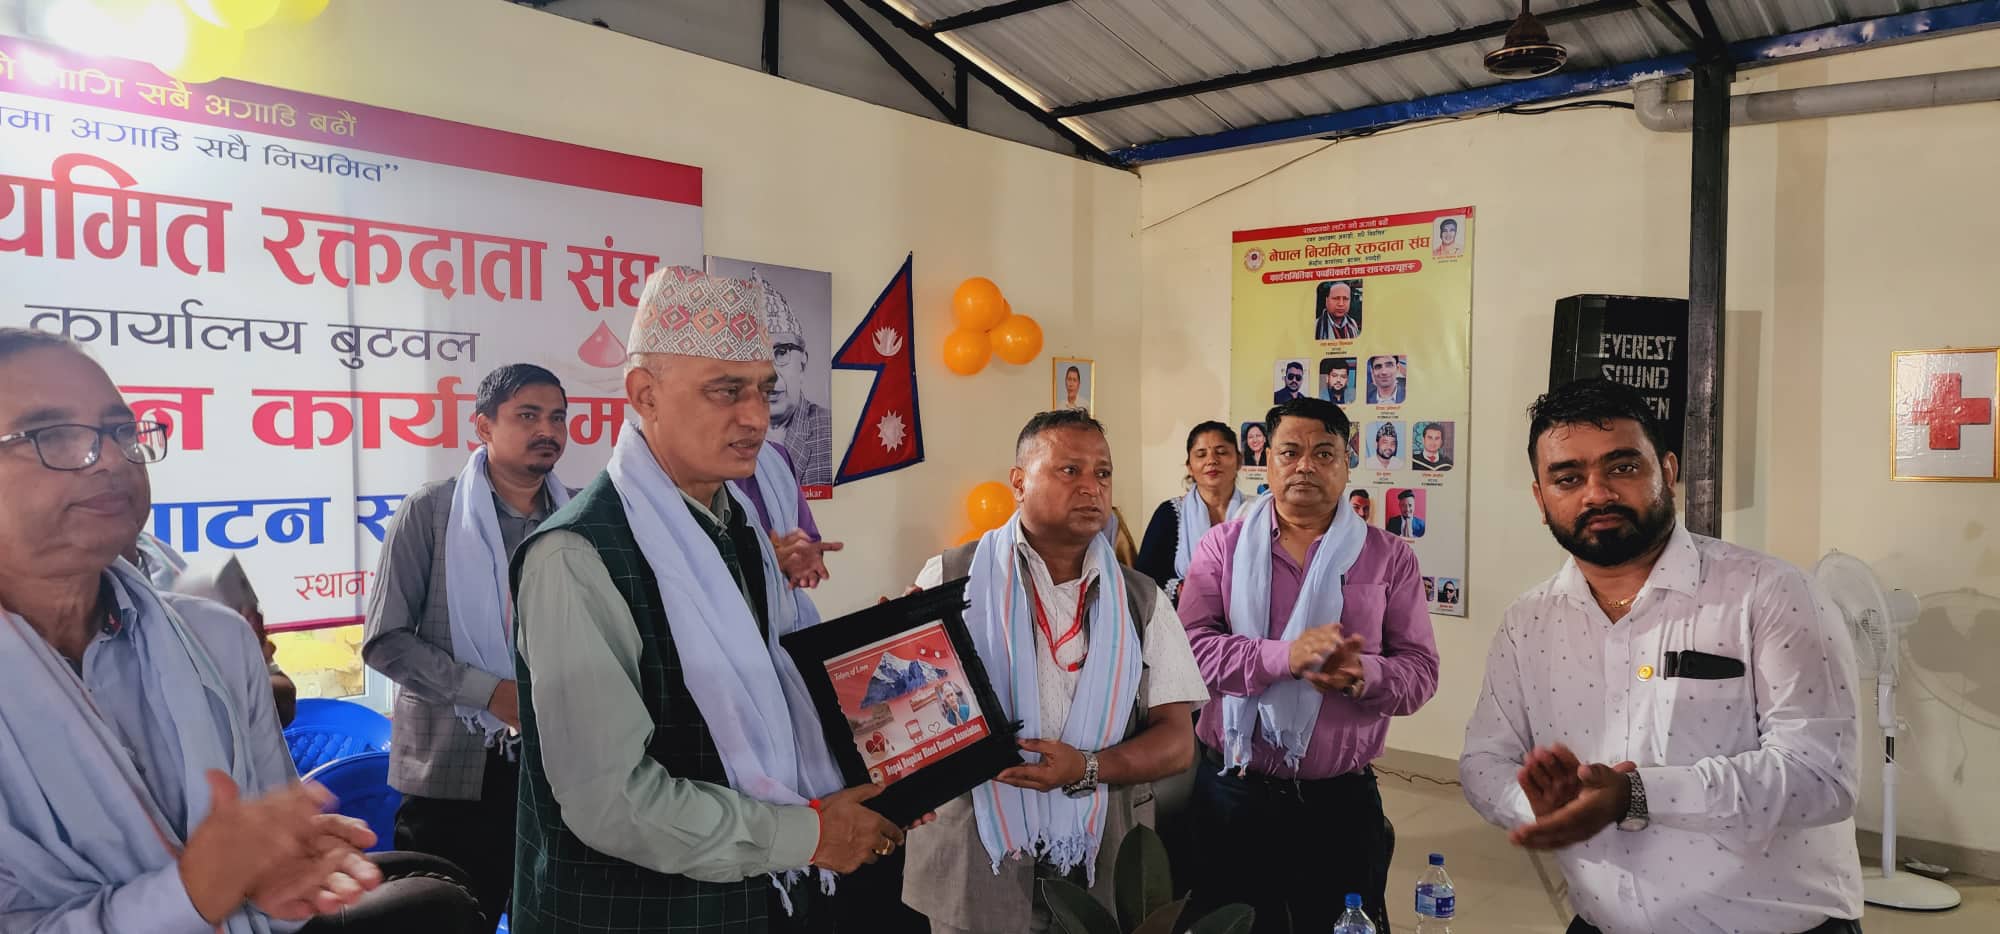 बुटवलमा नेपाल रक्तदाता संघको केन्द्रिय कार्यालय उद्घाटन